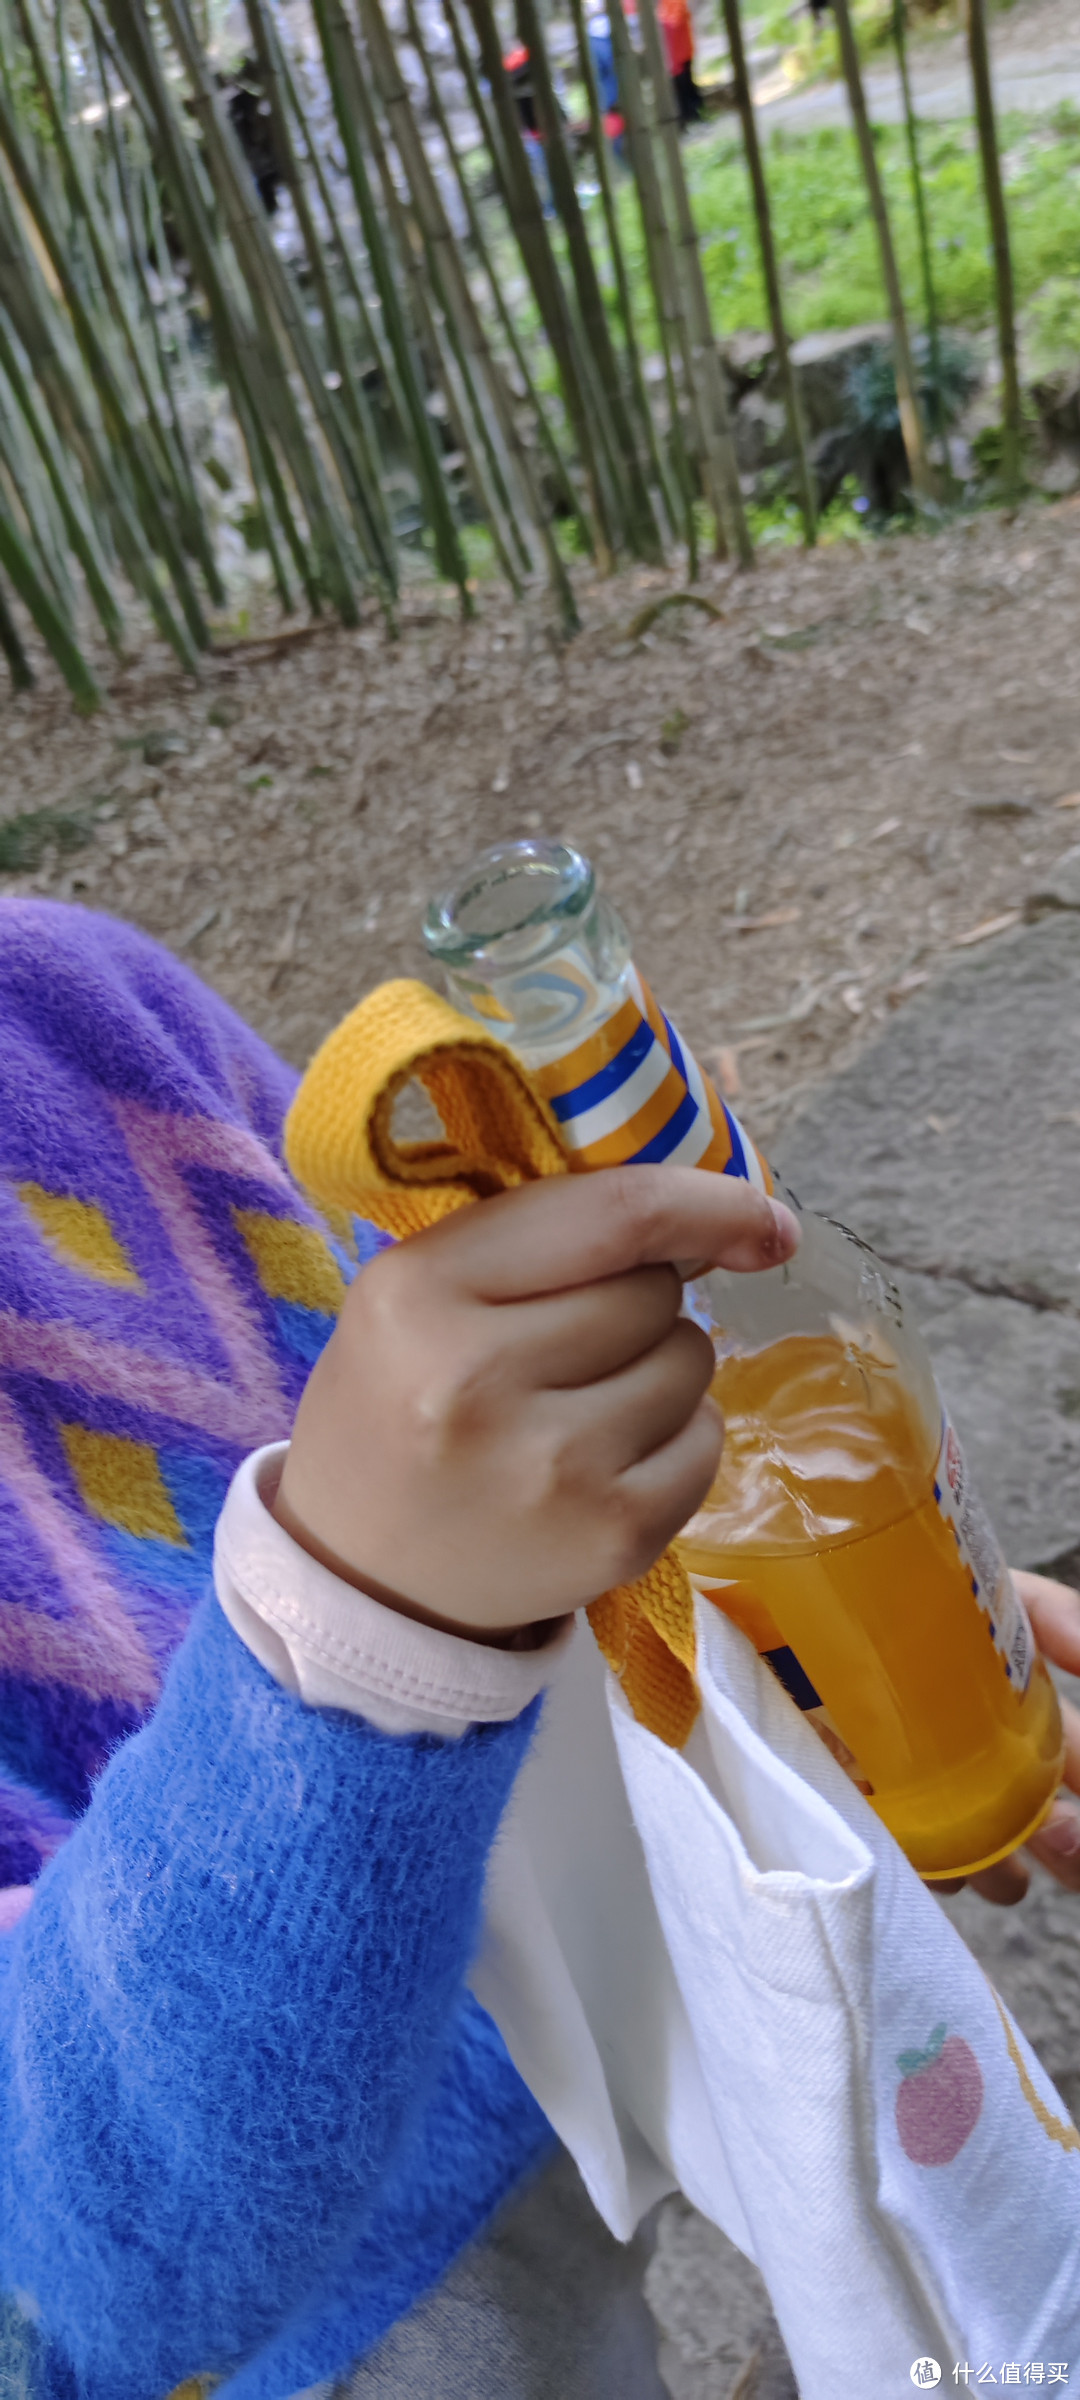 一瓶饮料/大窑橙诺 橙汁味汽水 碳酸饮料/健力宝/纤维+橙蜜味无糖0糖0脂运动